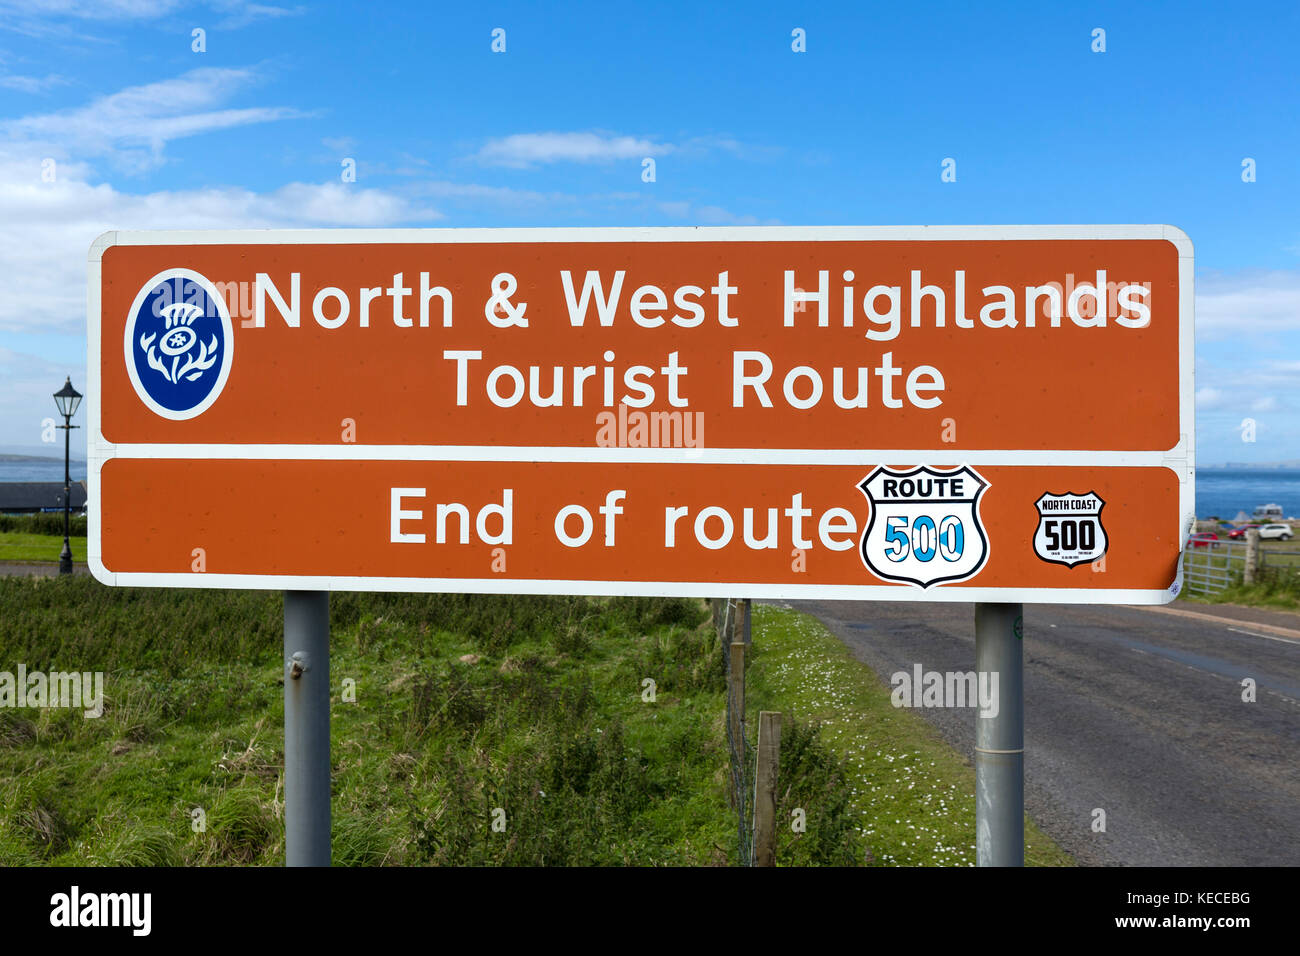 Ende der Norden und Westen Higlands touristische Route und ein Teil der Nordküste 500 Scenic Route 99, John O'Groats, Highlands, Schottland, UK Stockfoto